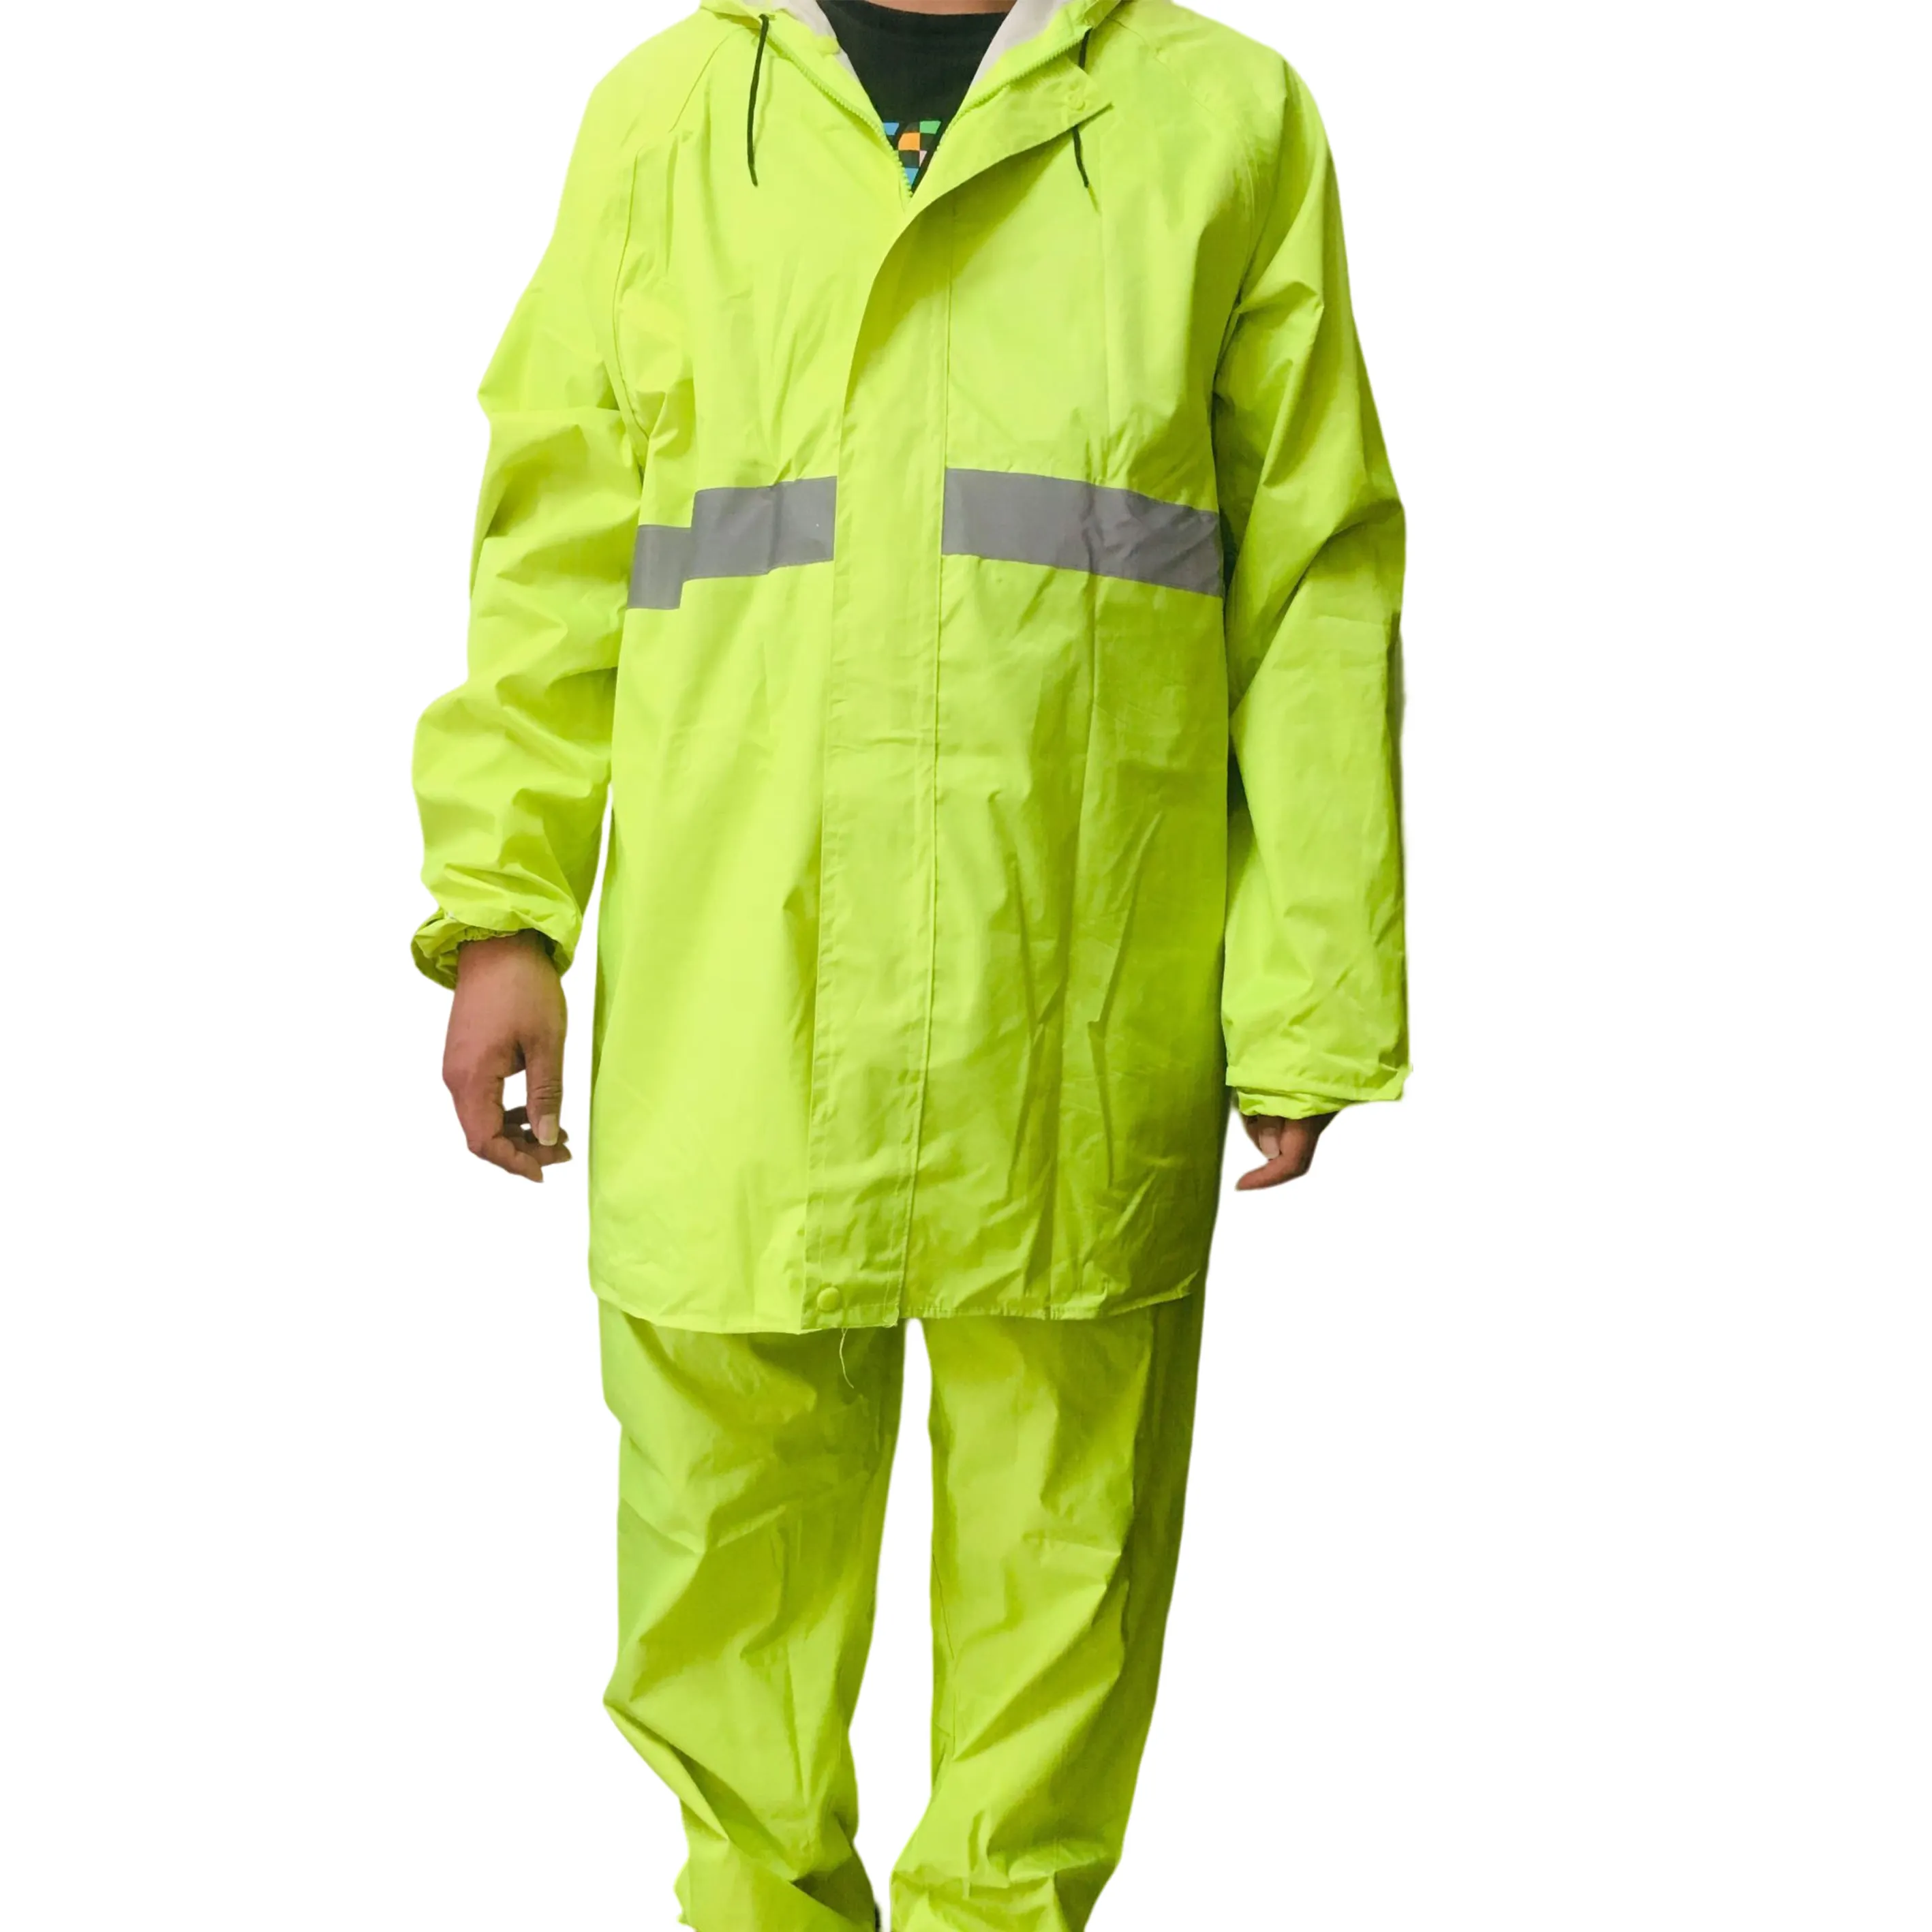 Combinaison de Protection de sécurité 1 pièce, en Pvc Oxford vêtements avec ruban réfléchissant, combinaison de pluie pour travail